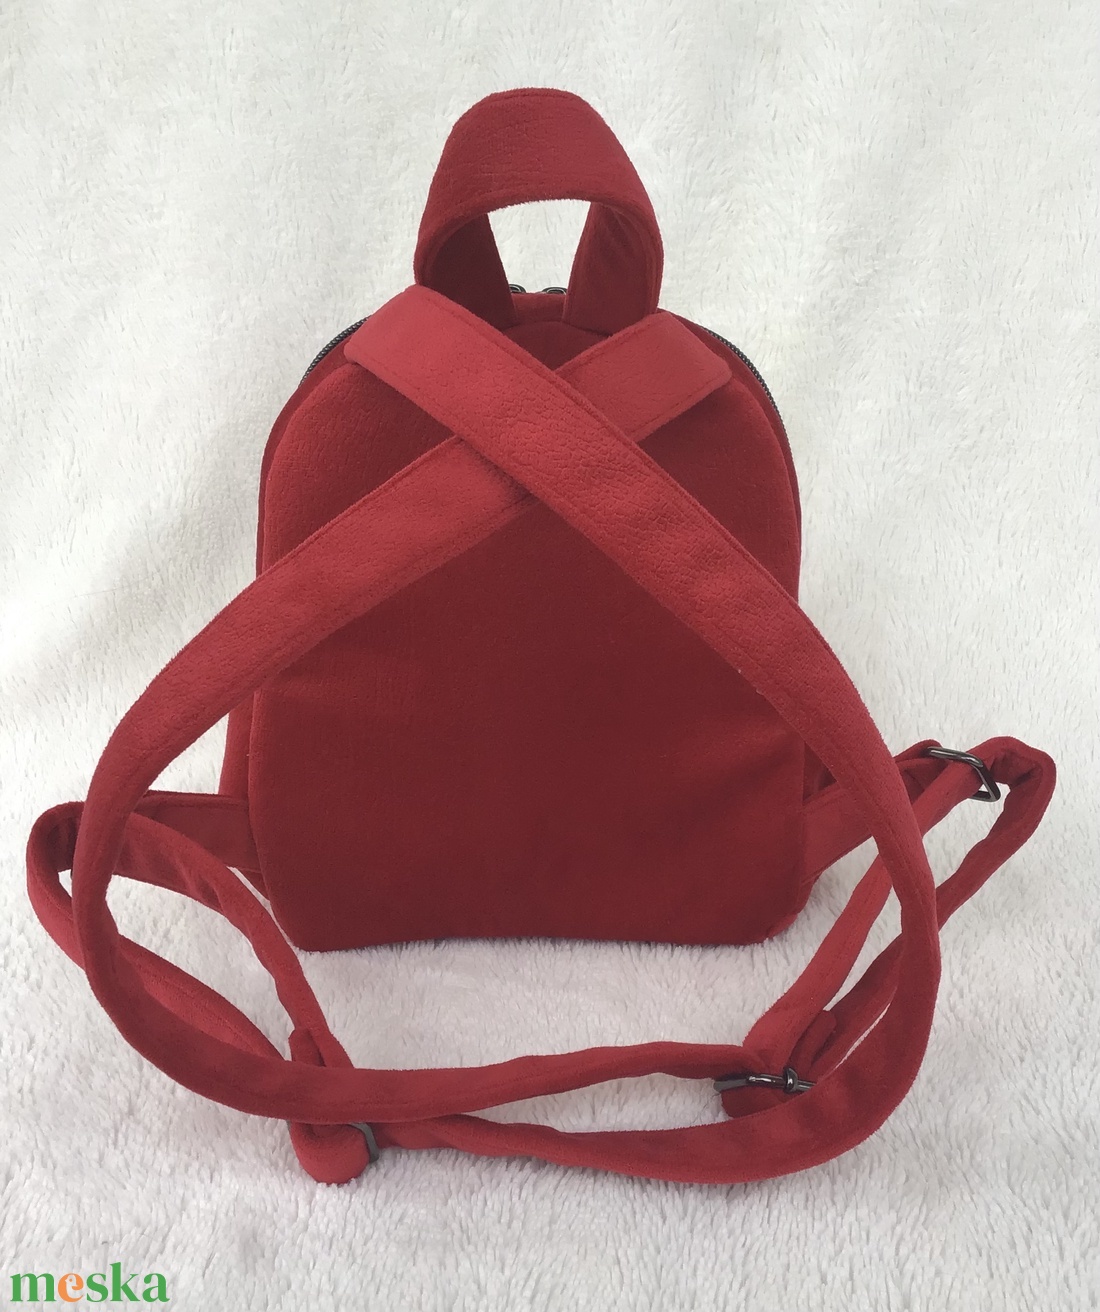 Gyönyörű, selymesen puha piros hátitáska, fekete kontraszttal - táska & tok - hátizsák - hátizsák - Meska.hu